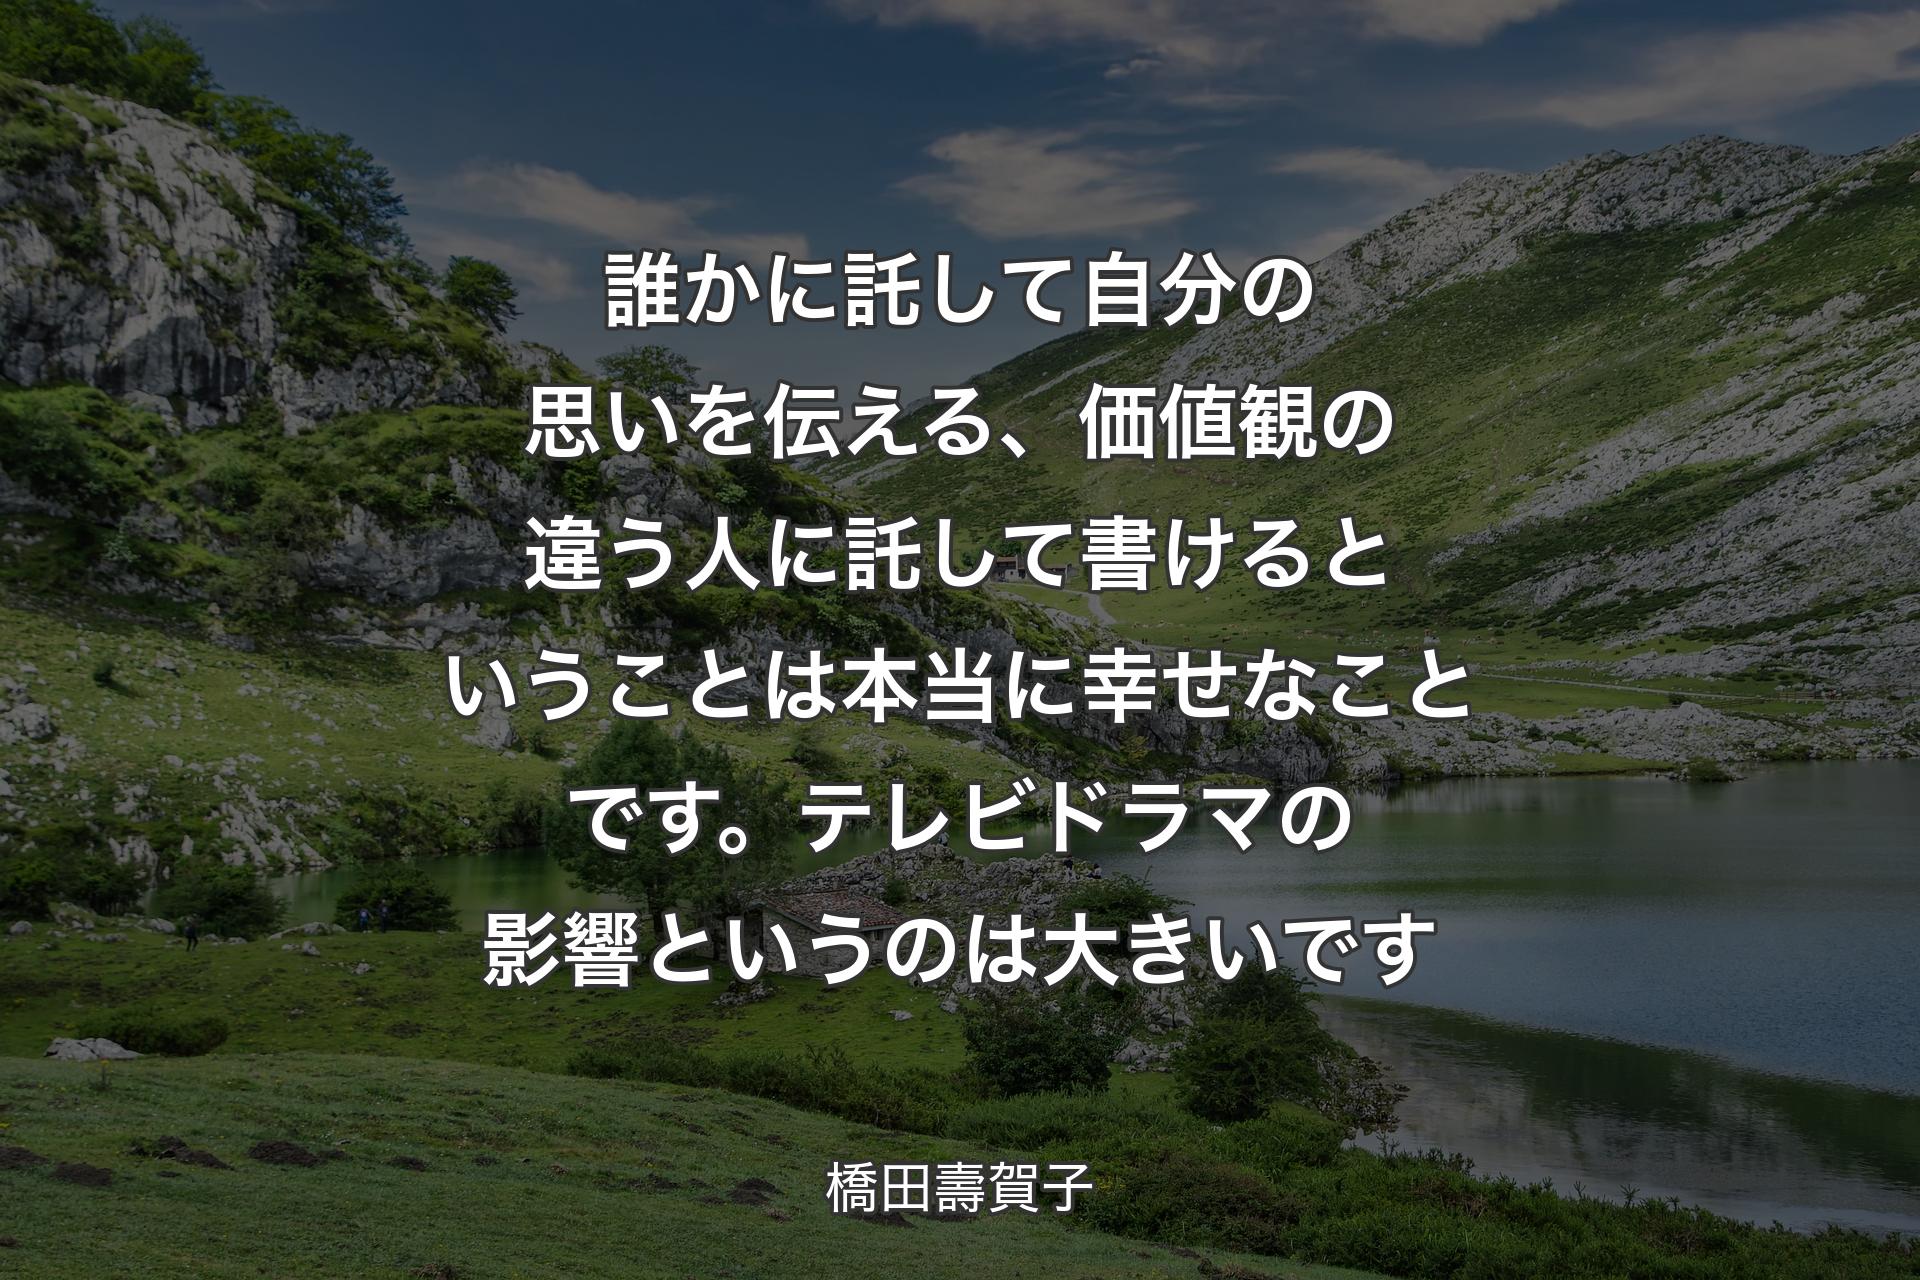 【背景1】誰かに託して自分の思いを伝える、価値観の違う人に託して書けるということは本当に幸せなことです。テレビドラマの影響というのは大きいです - 橋田壽賀子